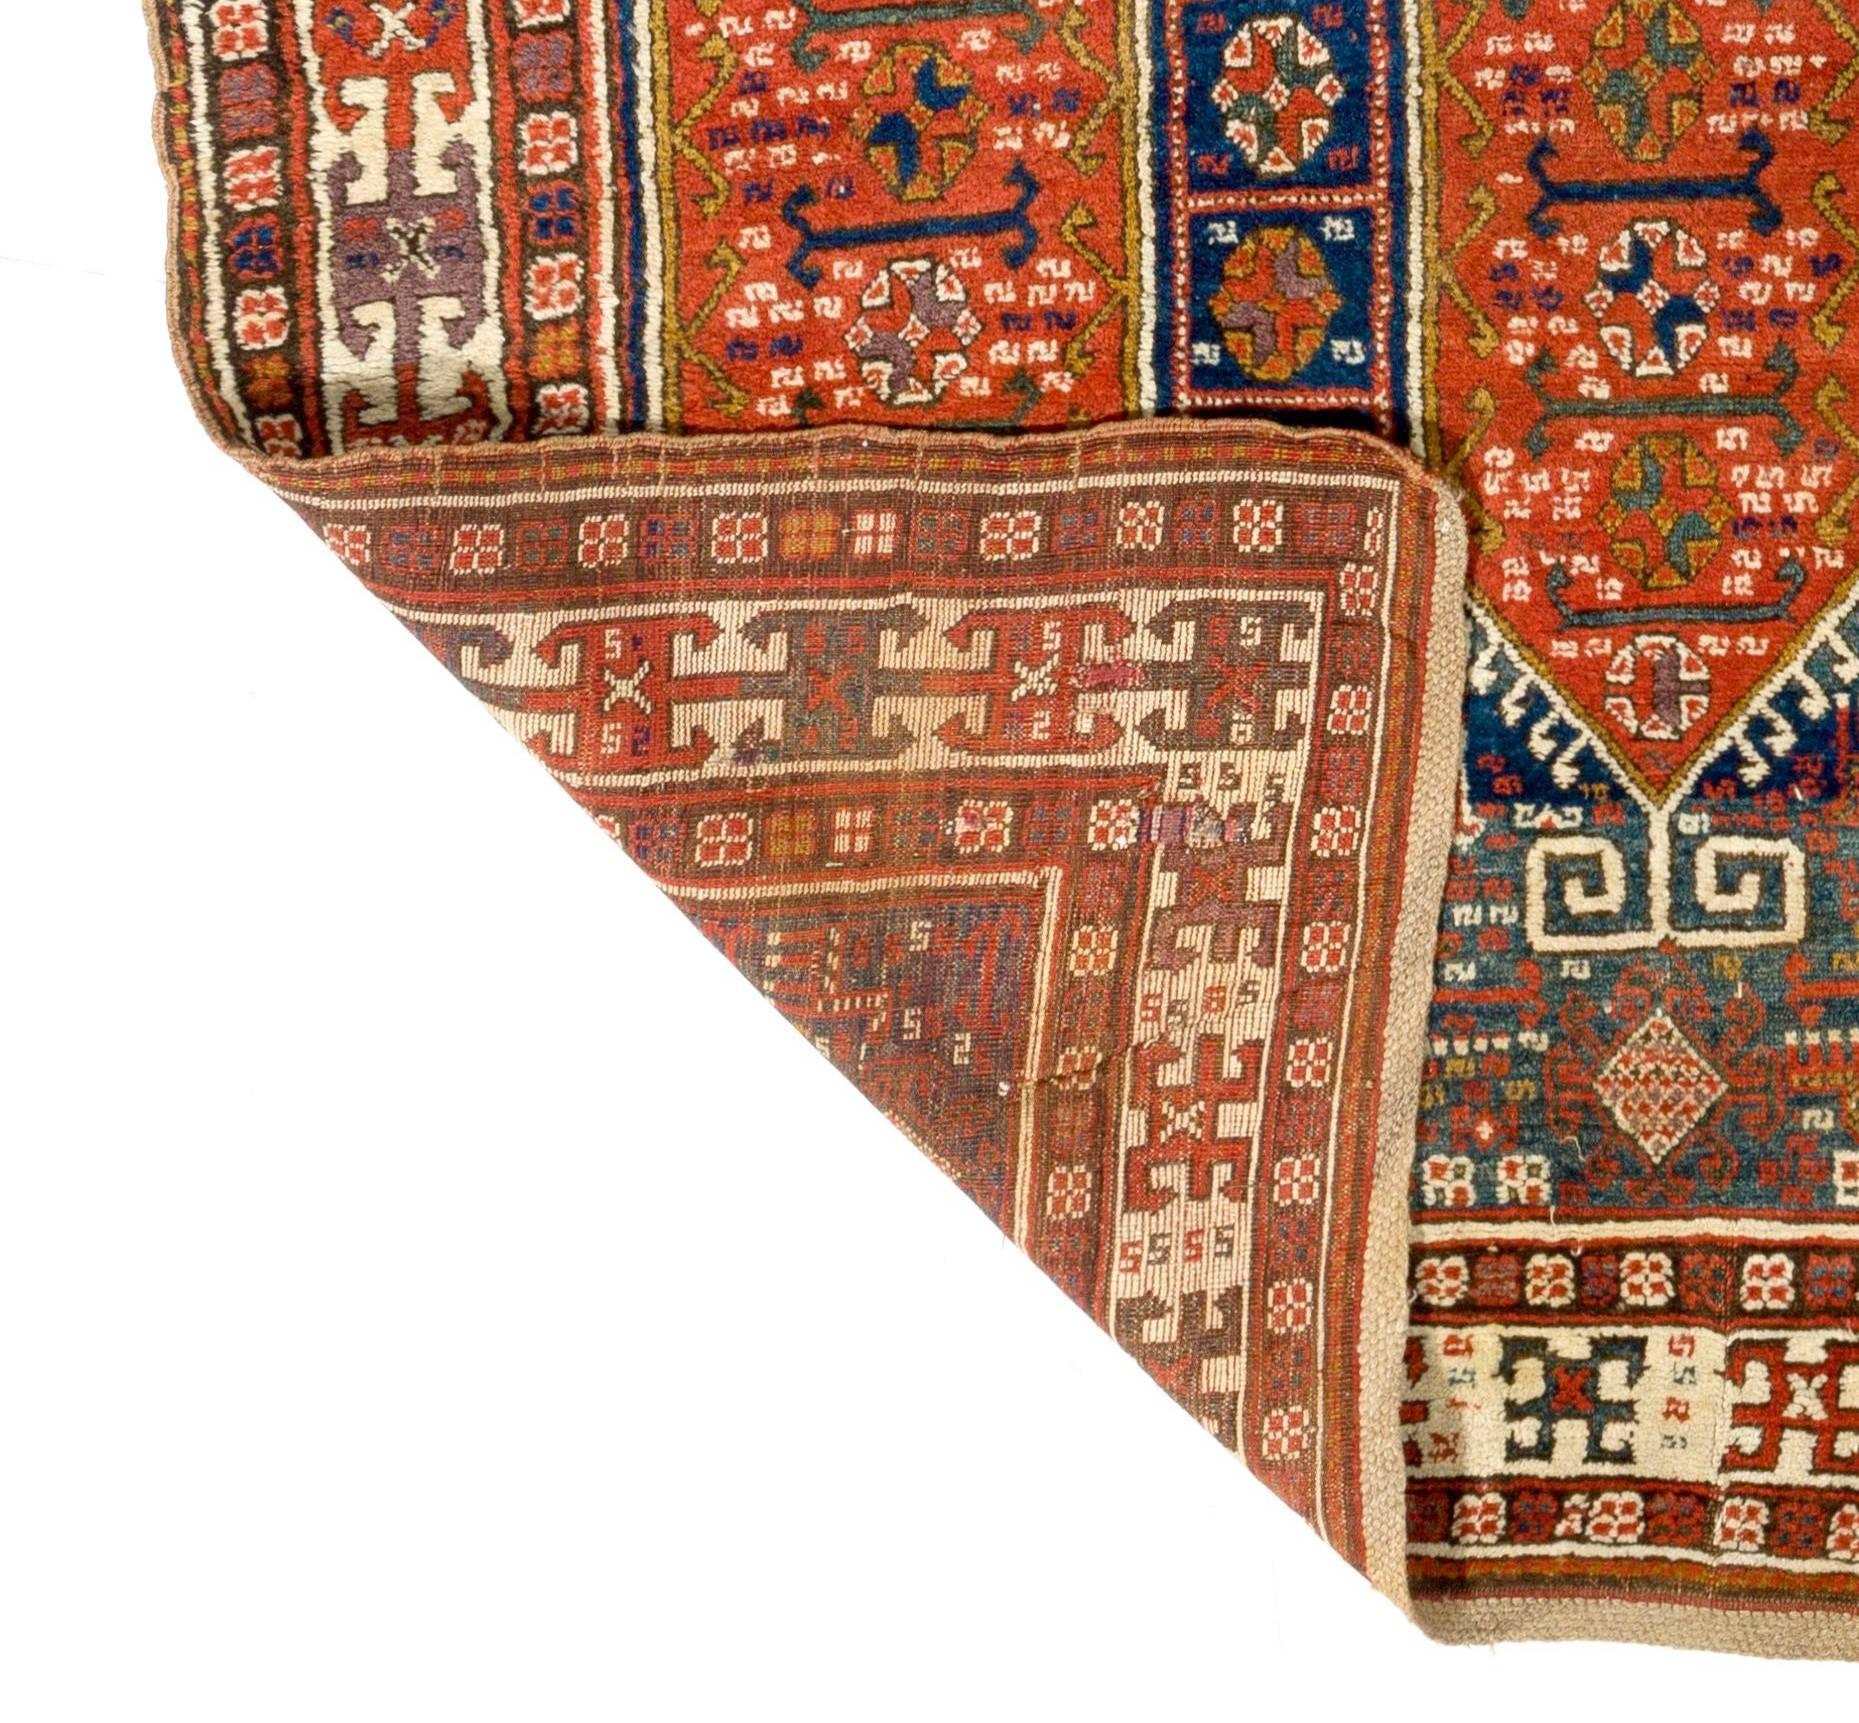 Plongez dans la riche tapisserie de l'histoire avec cet extraordinaire tapis de course ancien du Karabakh caucasien, datant d'environ 1880. Originaire de la région du Caucase, ce tapis est un objet rare et précieux qui témoigne de siècles d'héritage